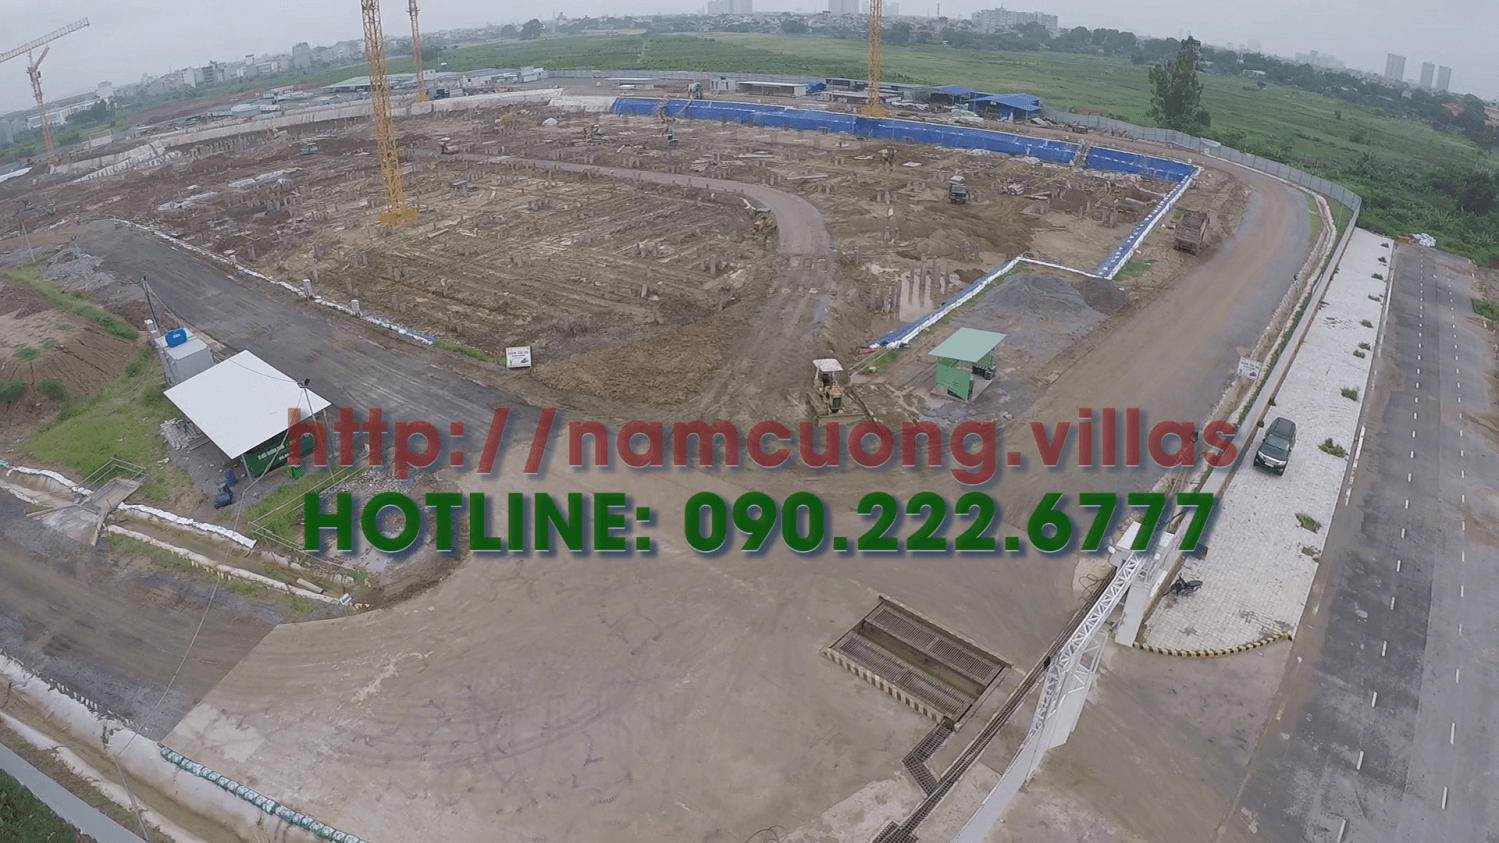 Cập nhật tiến độ xây dựng AEON Mall Hà Đông ngày 28 tháng 6 năm 2018